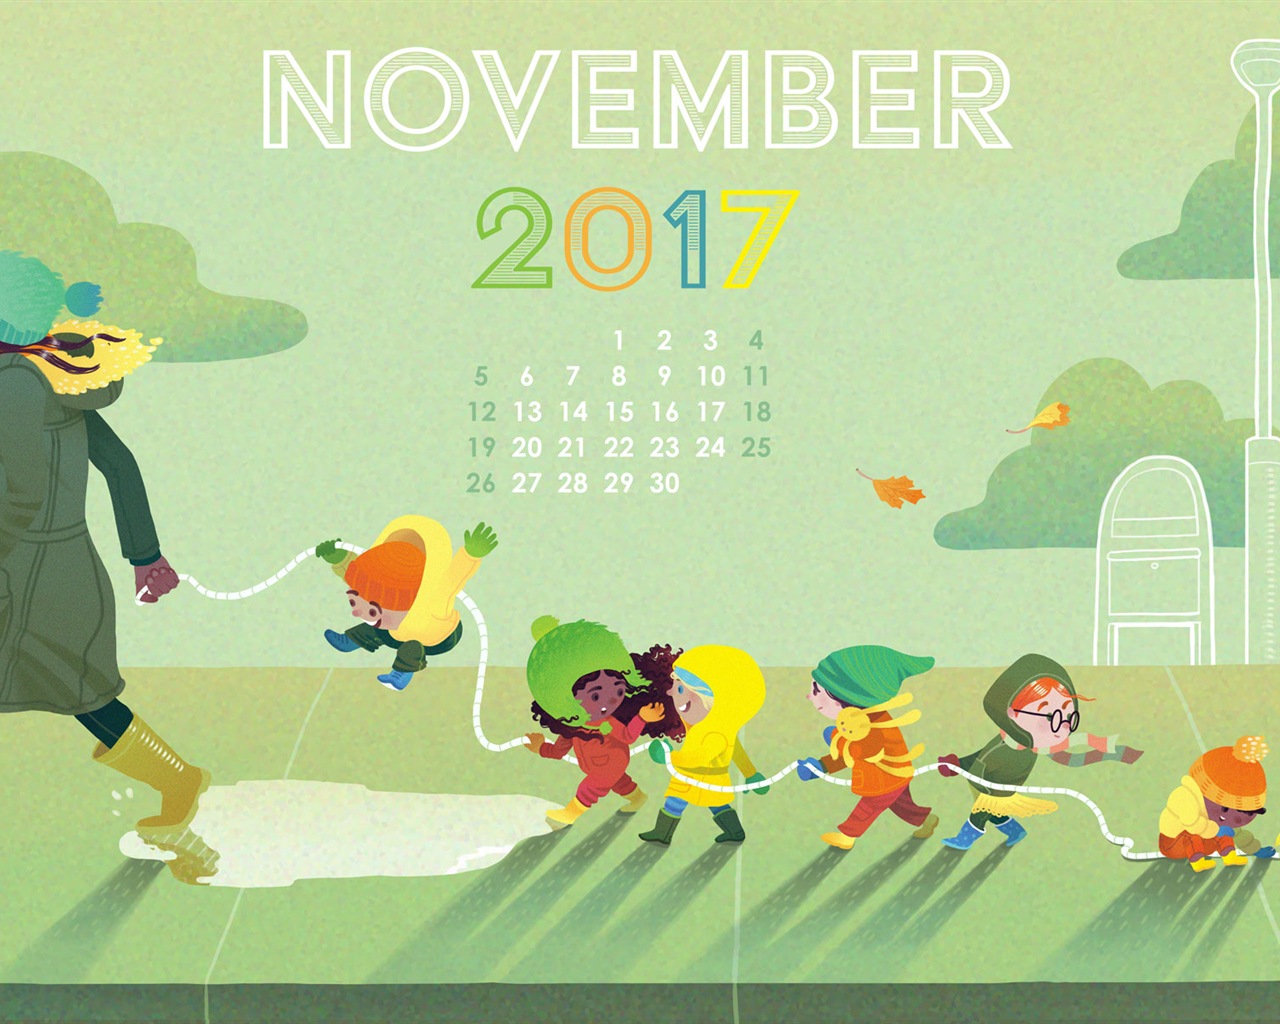 November 2017 Kalendertapete #20 - 1280x1024